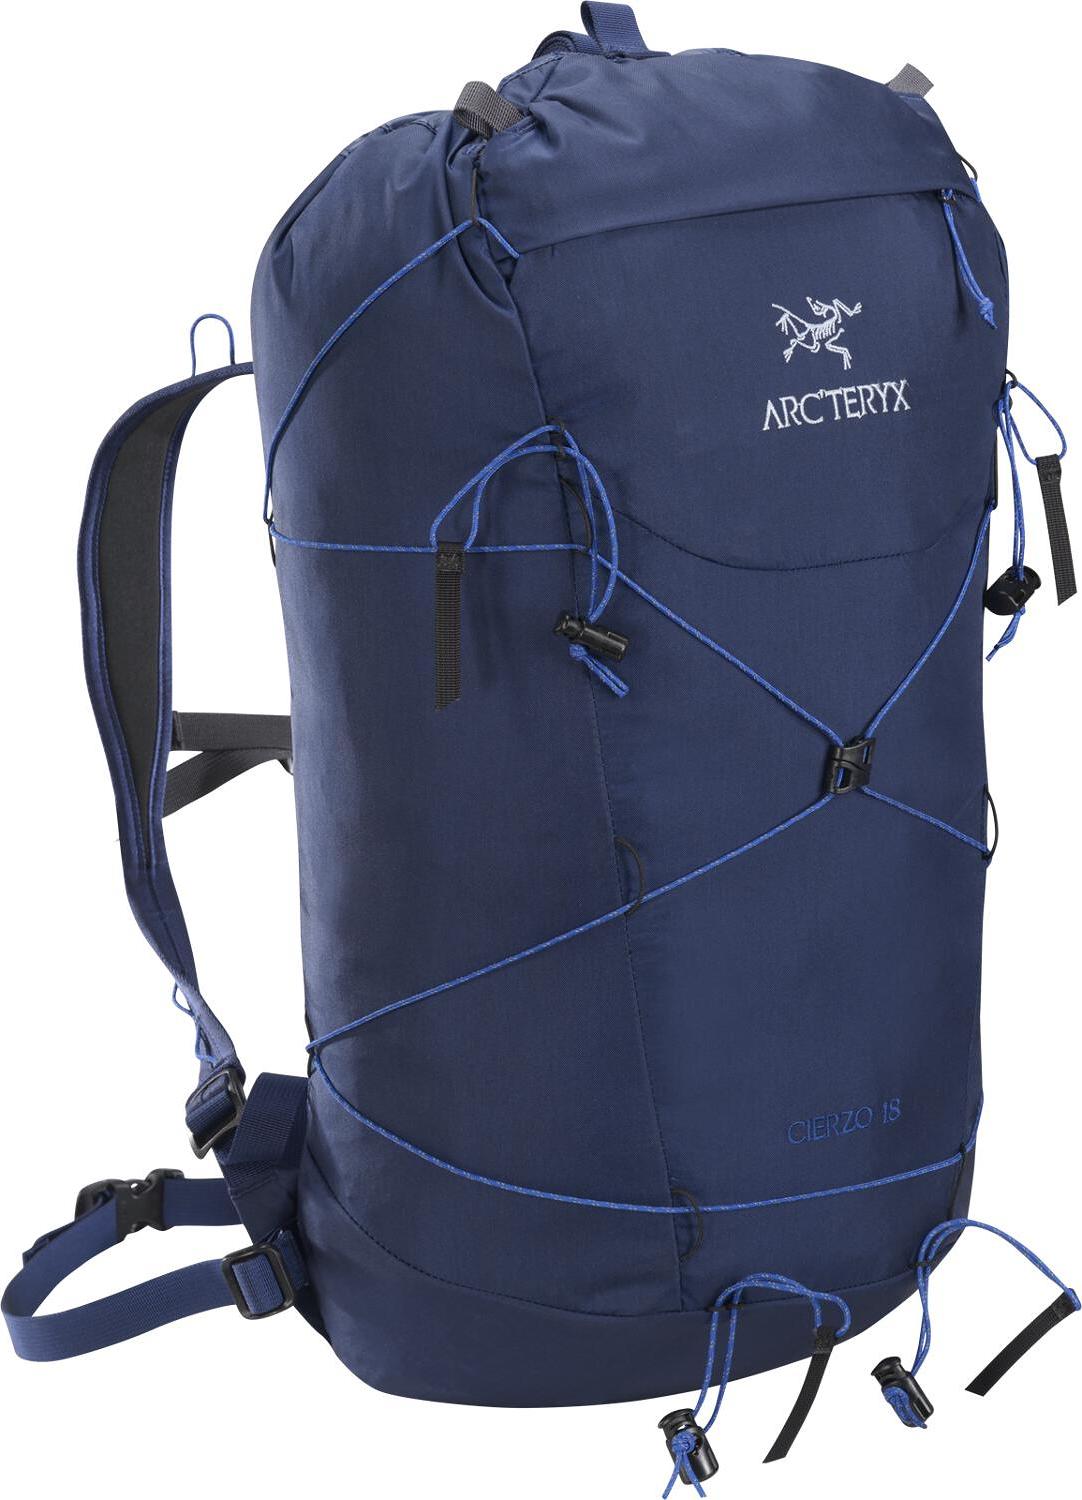 Arcteryx Cierzo 18 Backpack : Arc'teryx Cierzo 18 Backpack / Arc'teryx